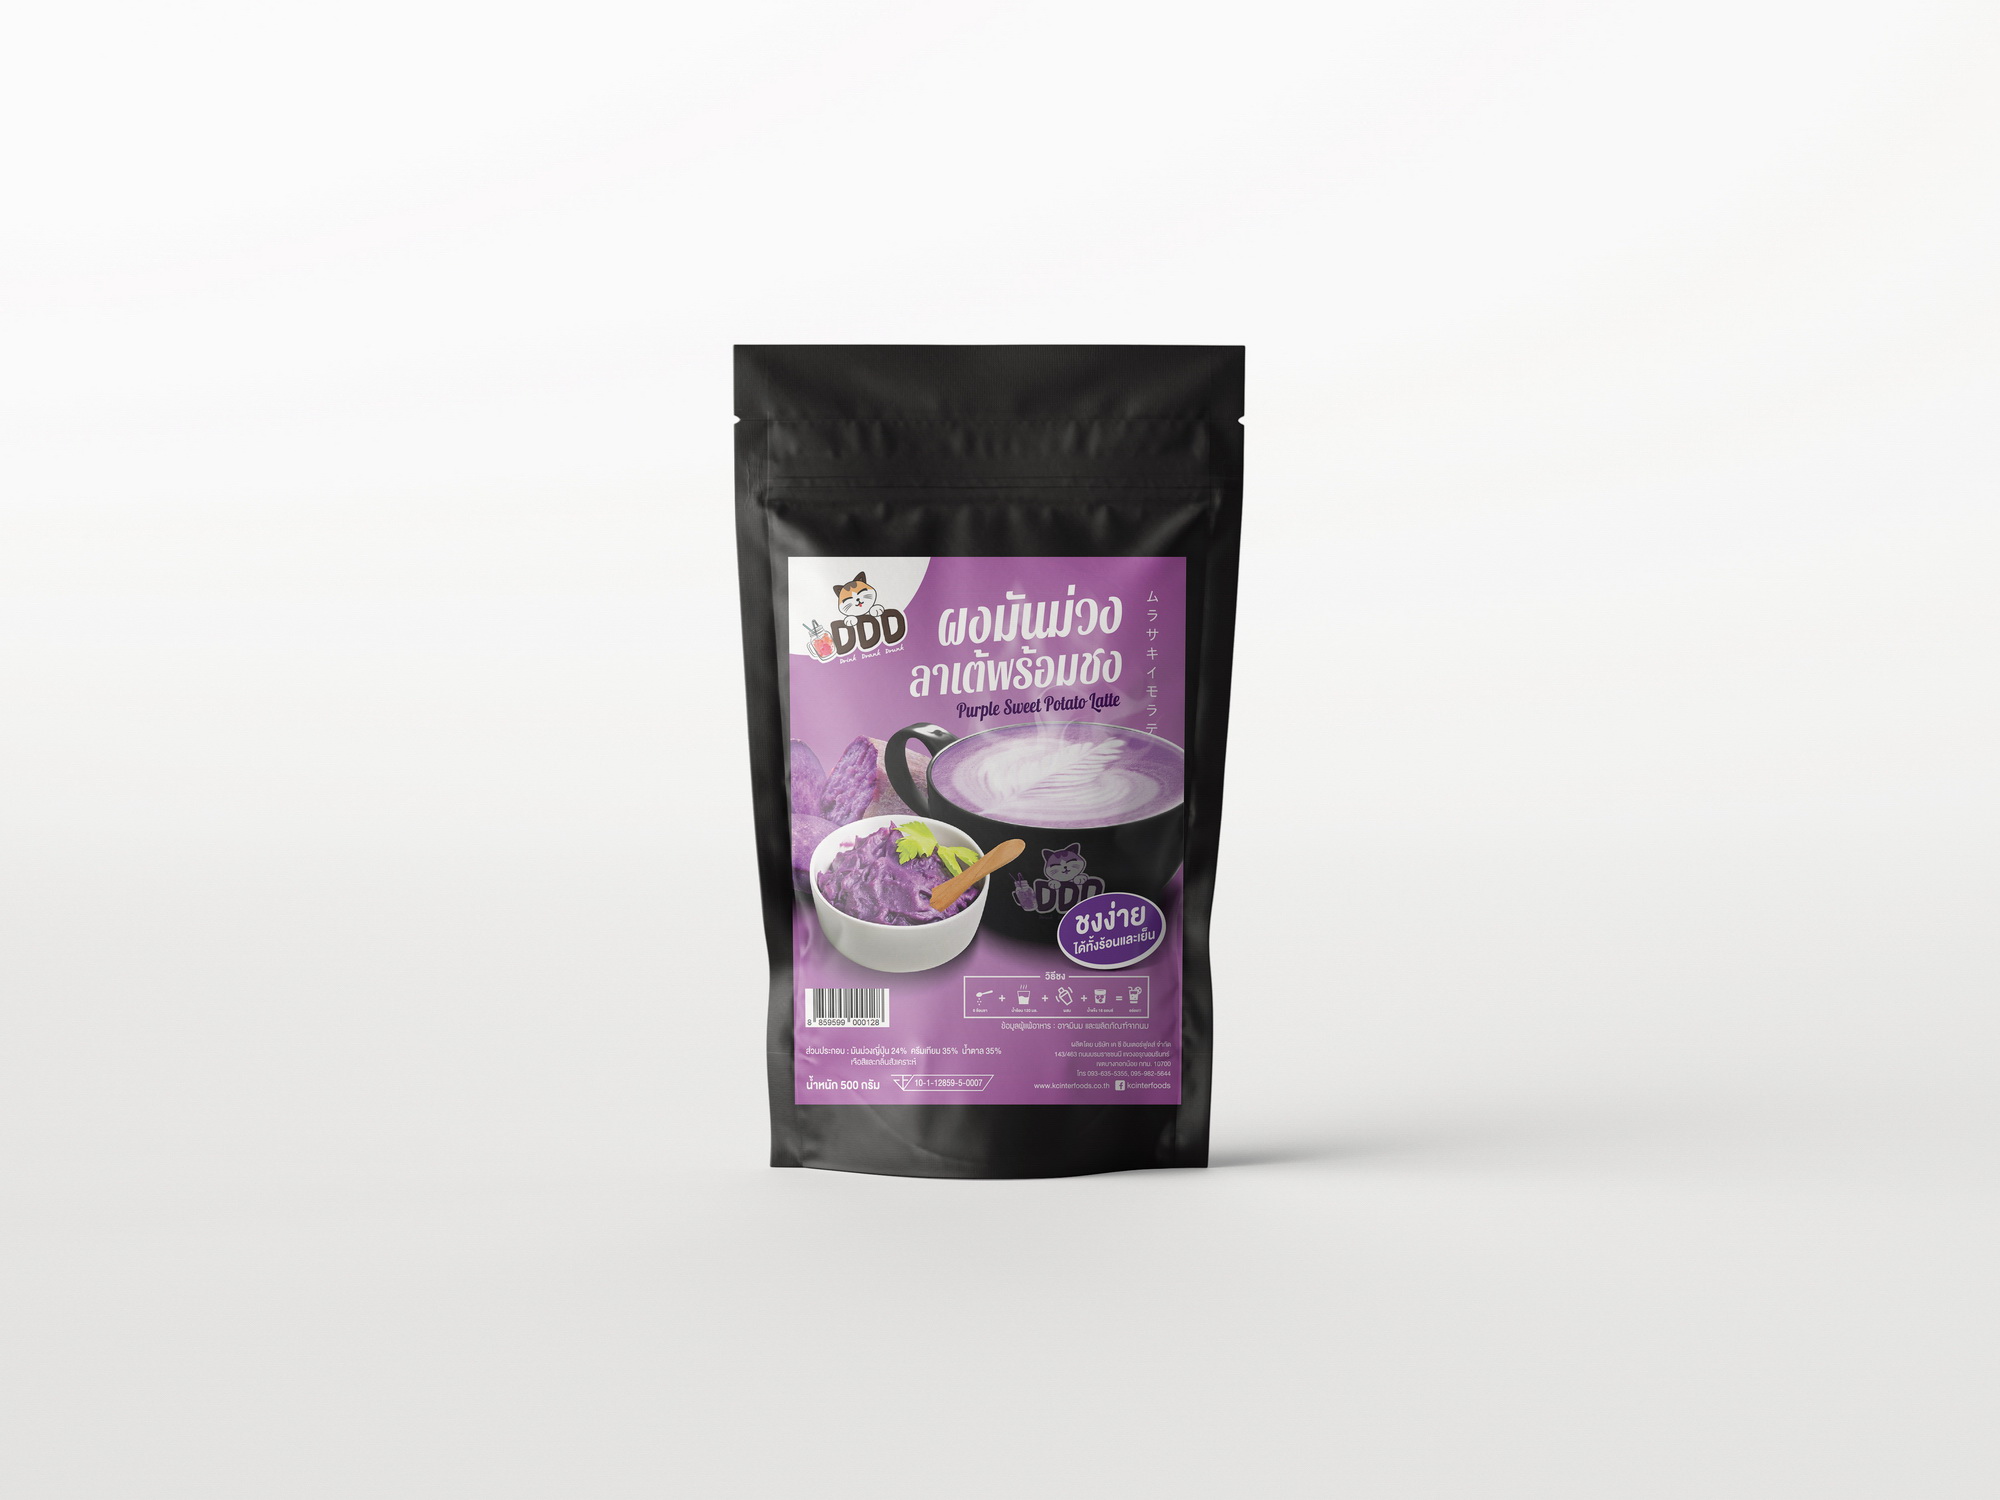 ผงมันม่วงลาเต้พร้อมชง 500 กรัม  (Instant Purple Sweet Potato Latte Powder)